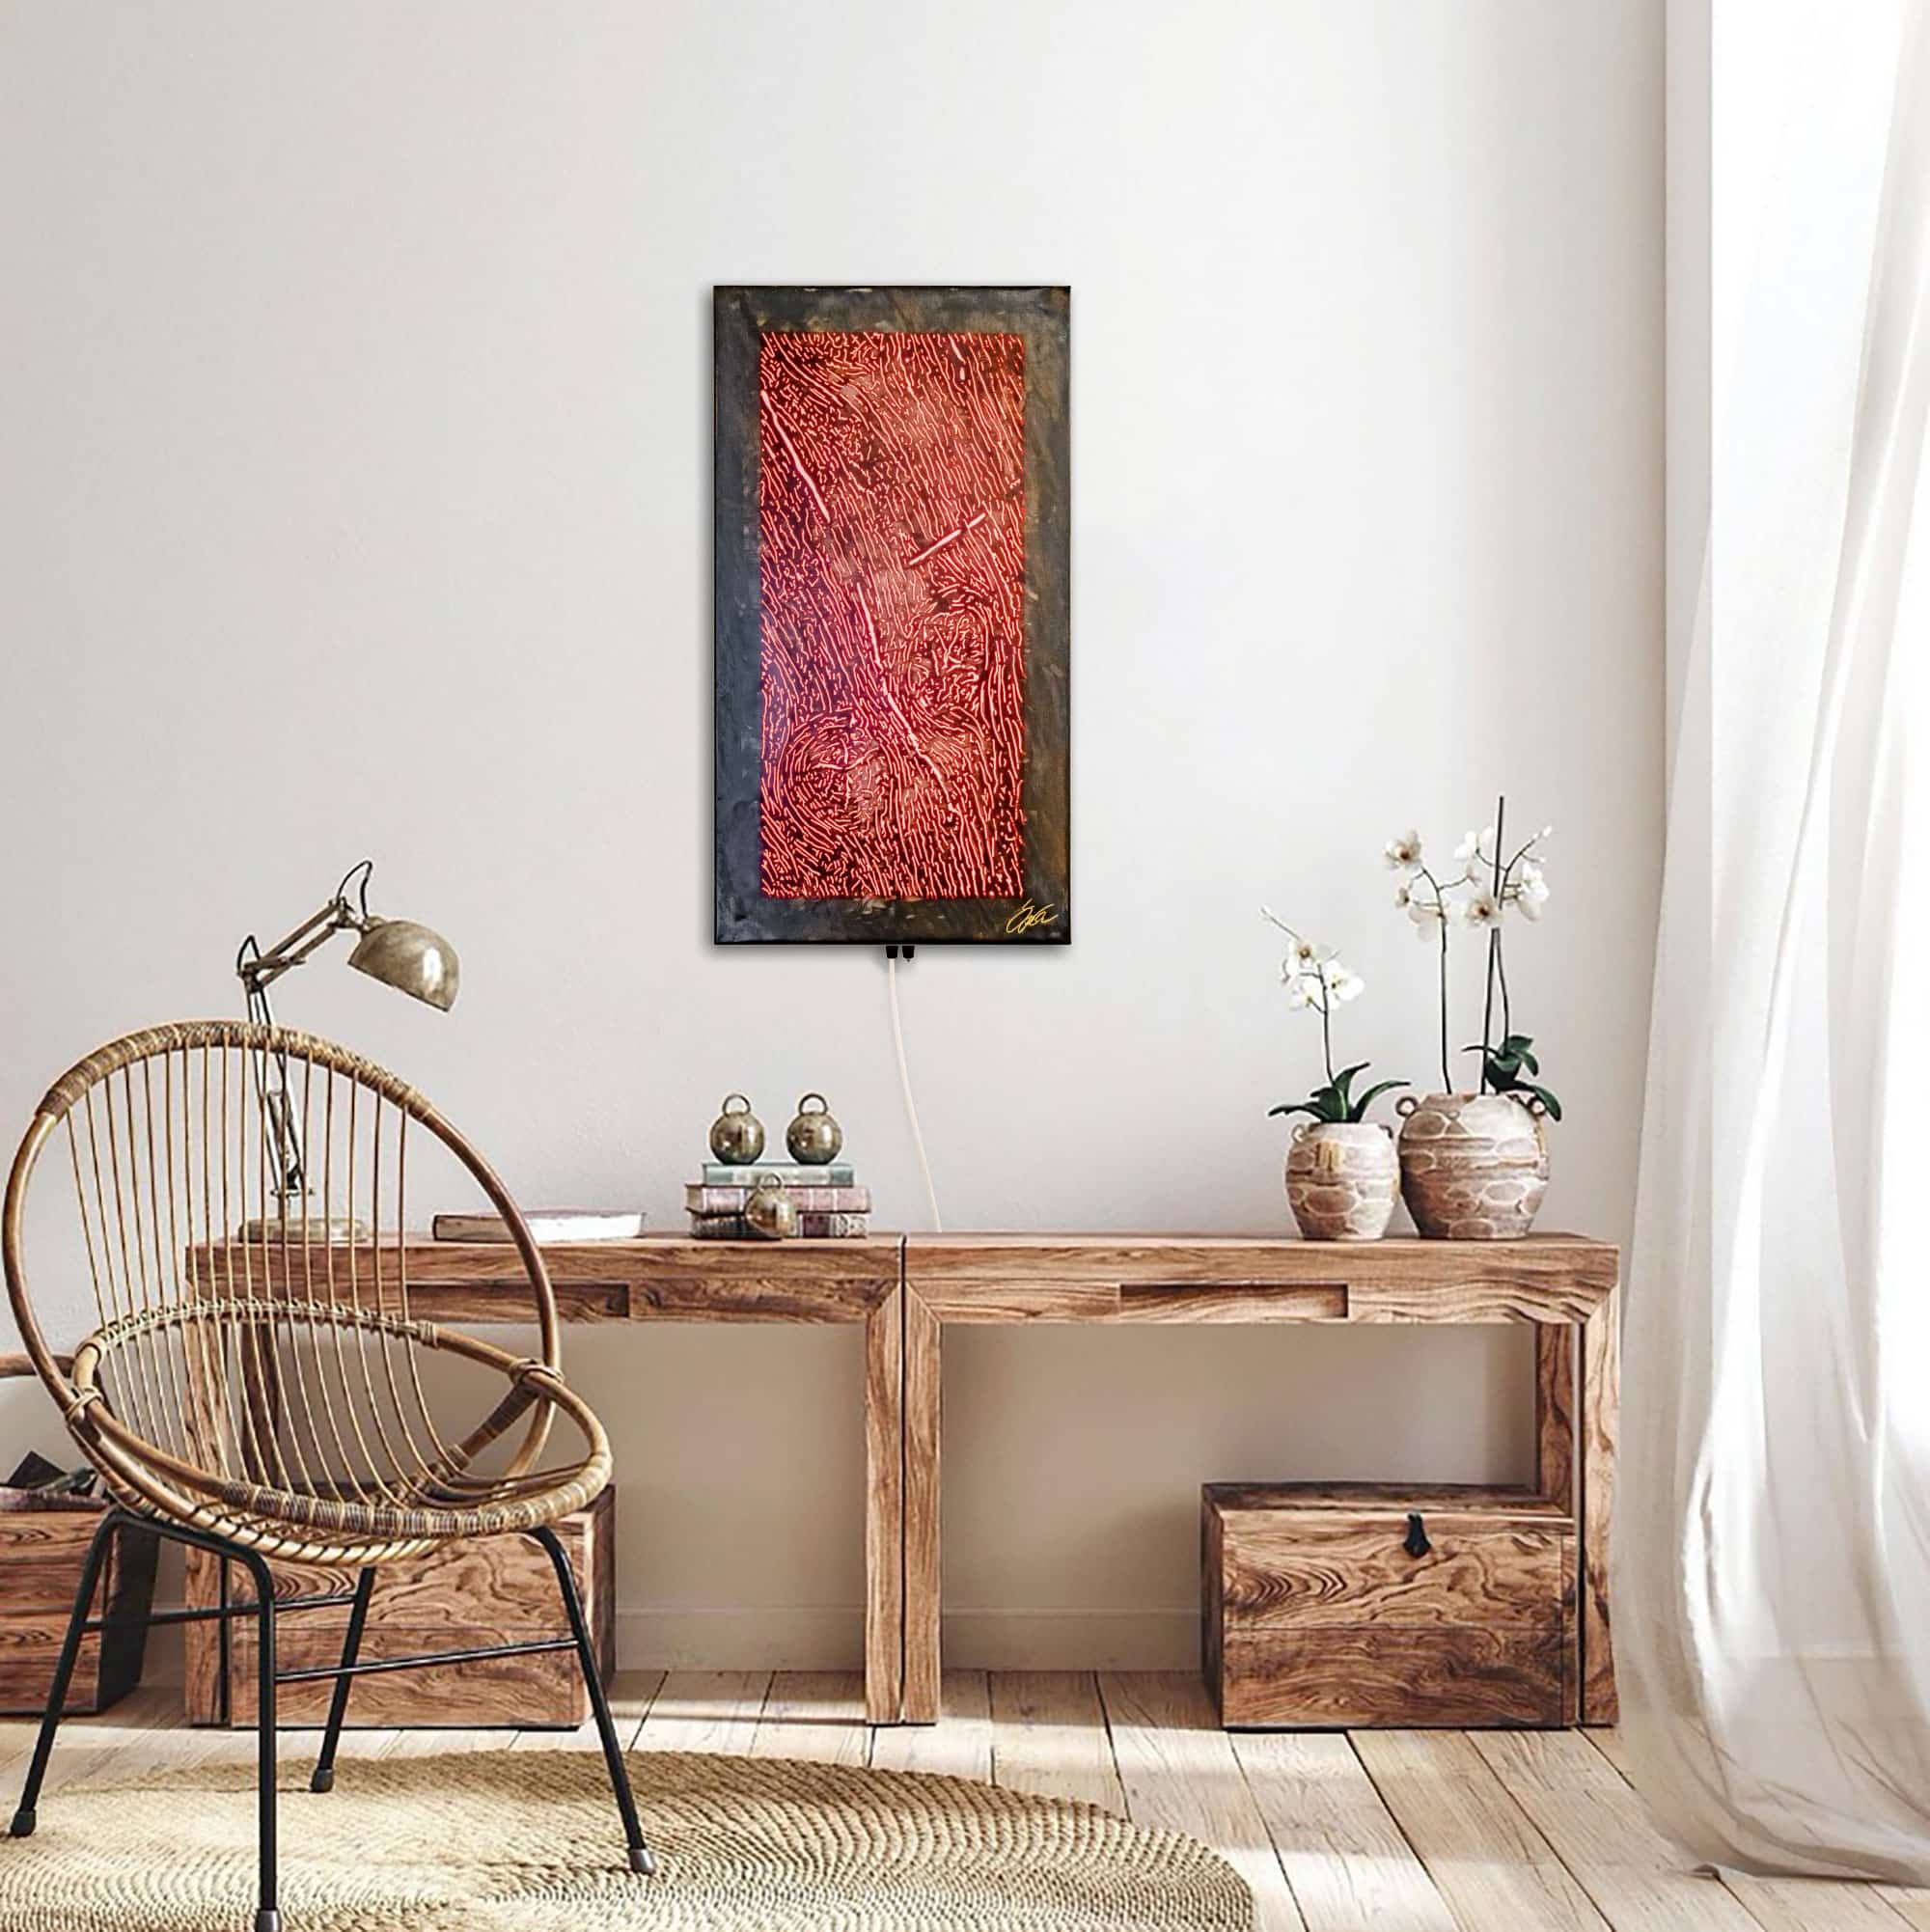 Stahlbild bzw. Bild aus Metall mit dem Namen "Wood" aus der Reihe „noch mehr“ von Daniel Springer. Stahlbild in Holzoptik mit RGB Beleuchtung